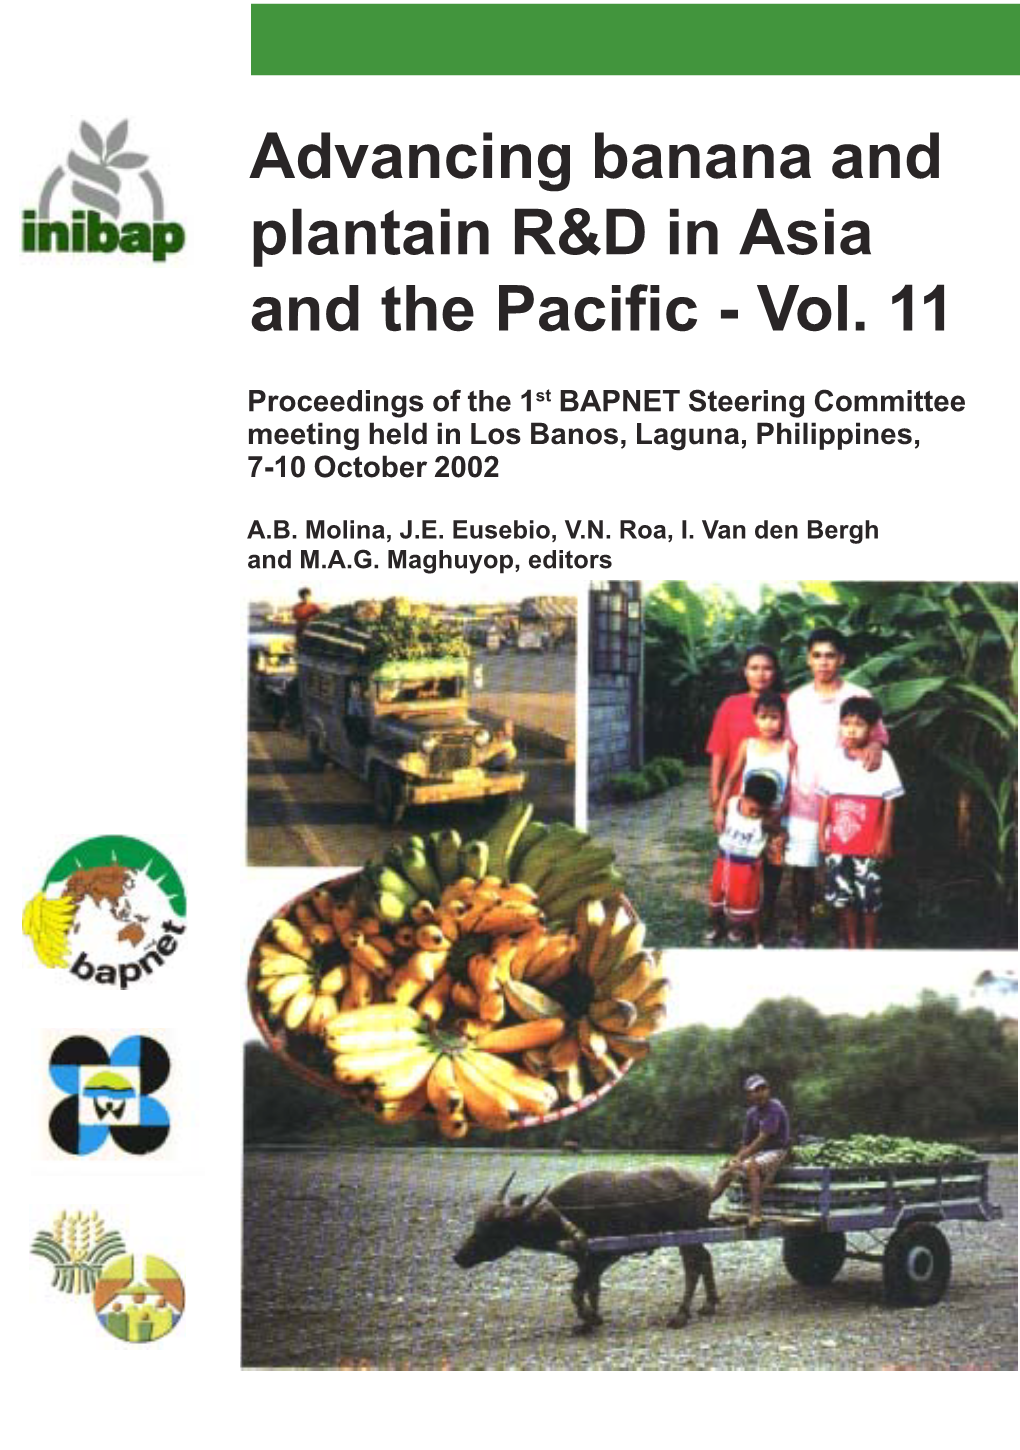 3Rd BAPNET Steering Committee Meeting Proceedings Philippines